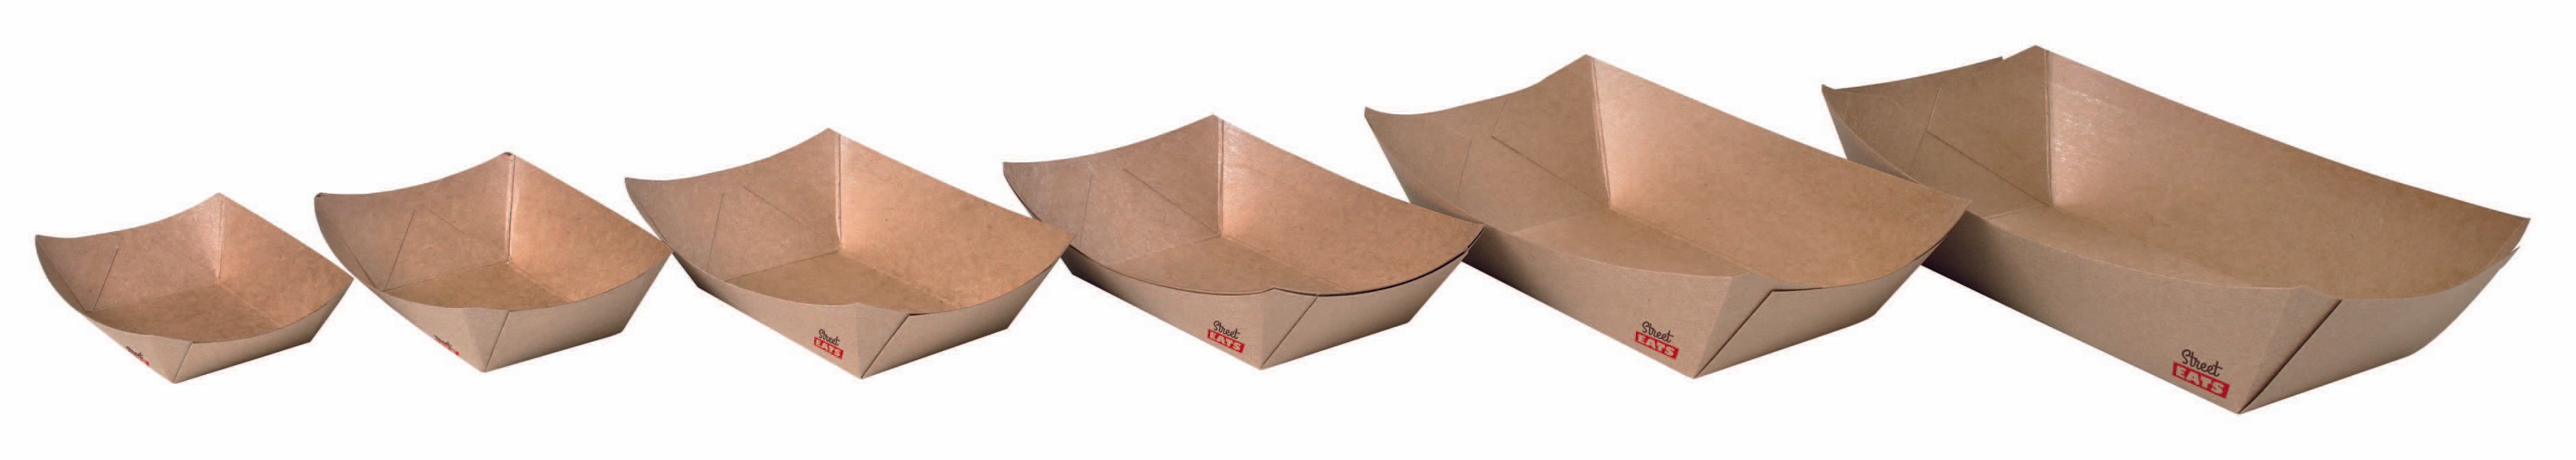 Multi Use Kraft Paper Boat -7oz L:5.5 X W:3 X H:1in 1000 Pcs/Cs